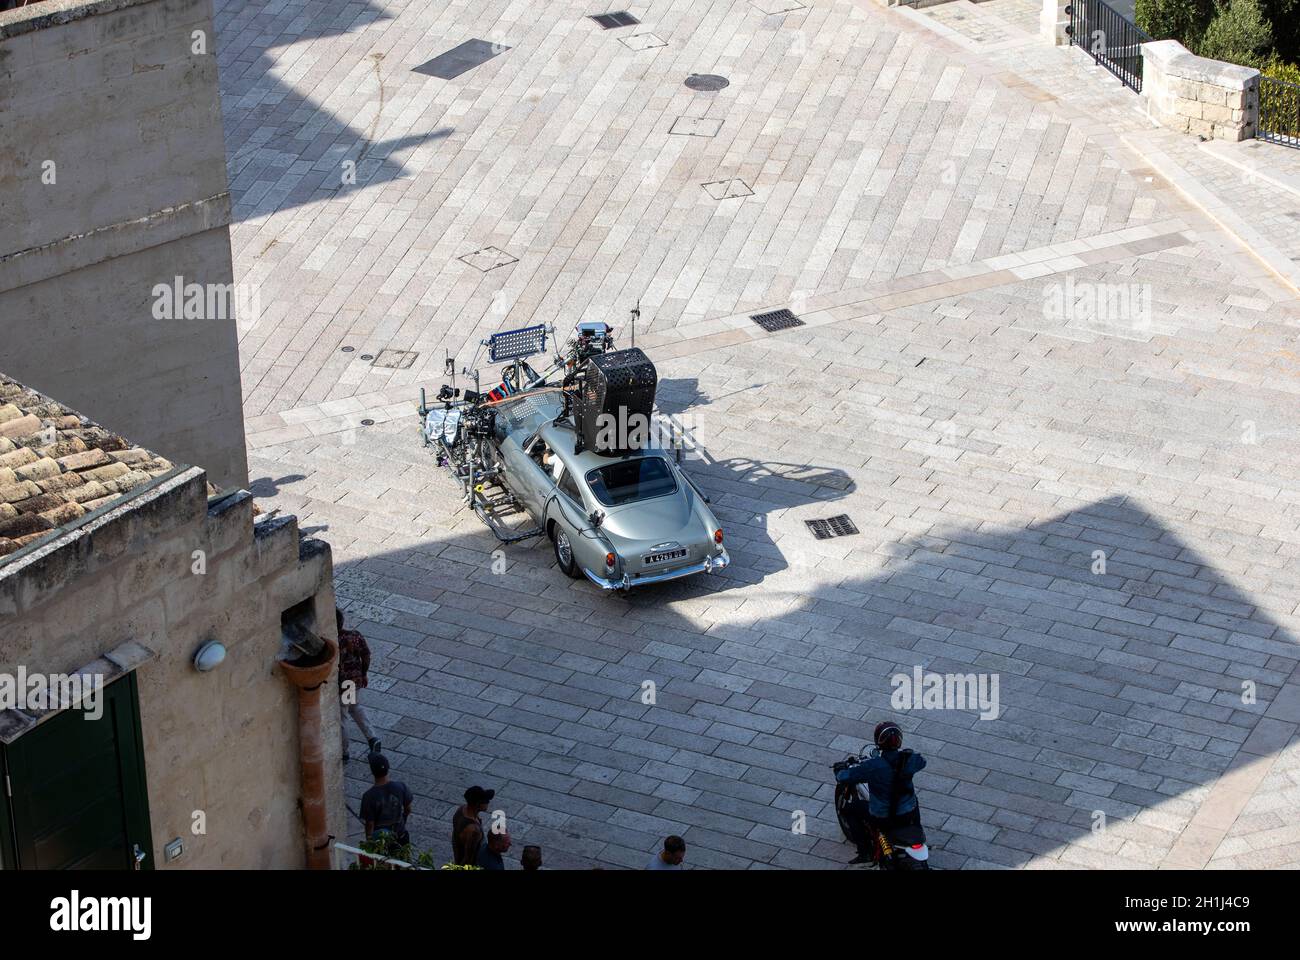 Matera, Italien - 15. September 2019: Bond 25, Aston Martin DB5 beim Filmen von Verfolgungsszenen durch die engen Gassen des Films "keine Zeit zu sterben" in S Stockfoto